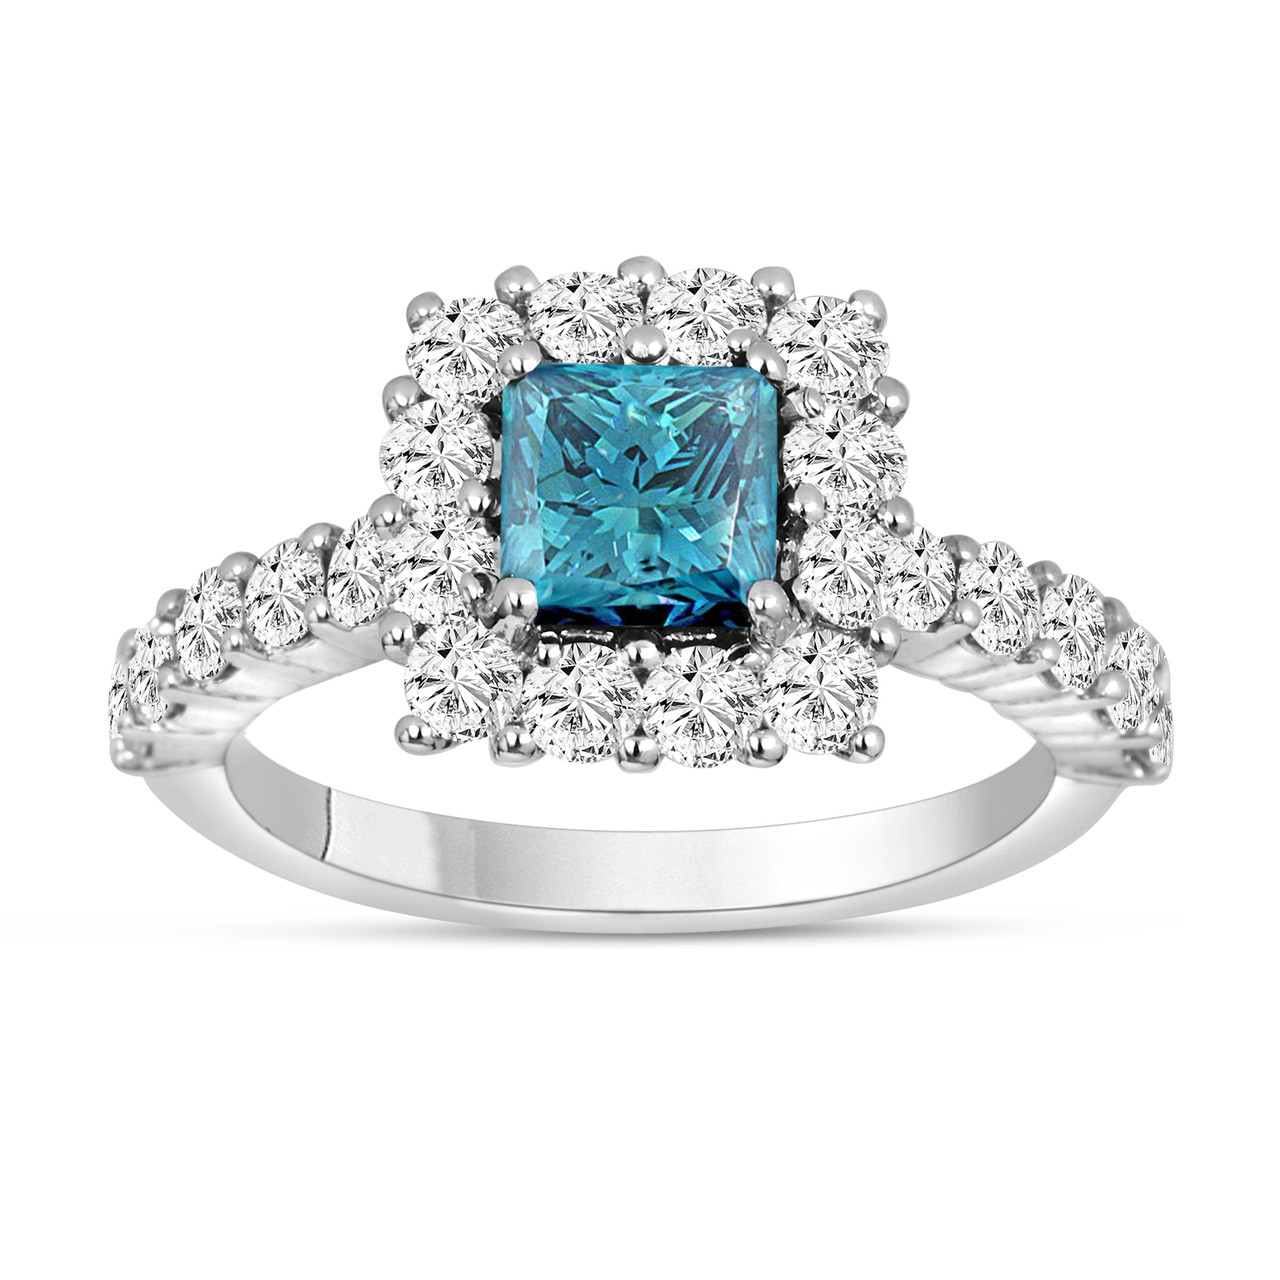 Morganite & Diamond Engagement Ring 14K White Gold 1.24 Carat Pave Set  HandMade Certified Halo